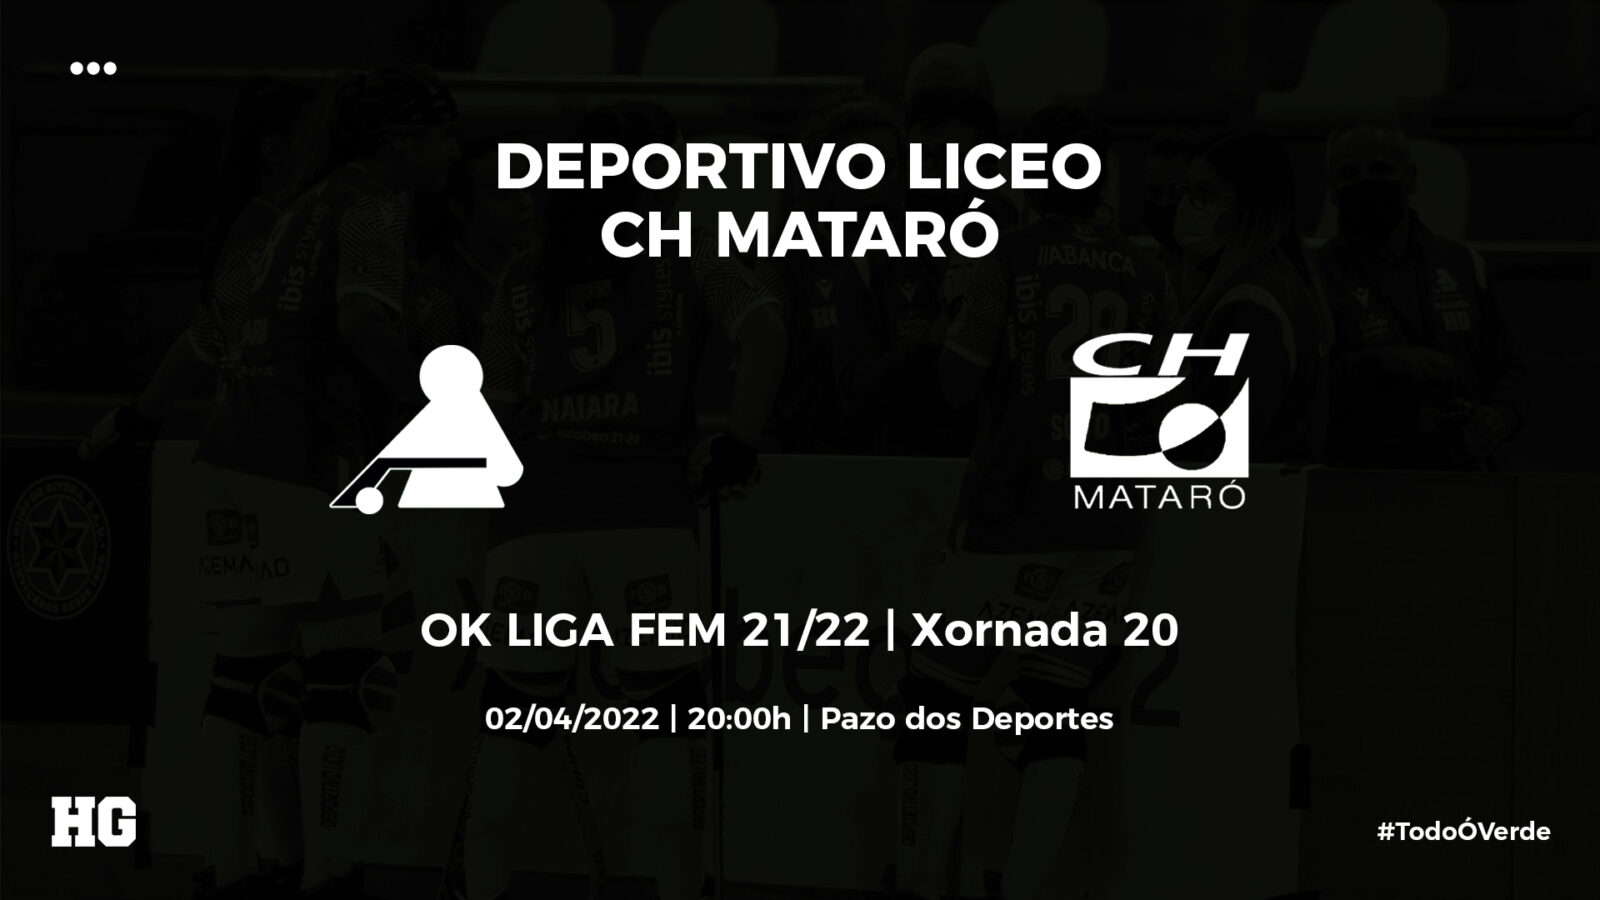 Entradas para el Liceo-Mataró de OK Liga Femenina (jornada 20)